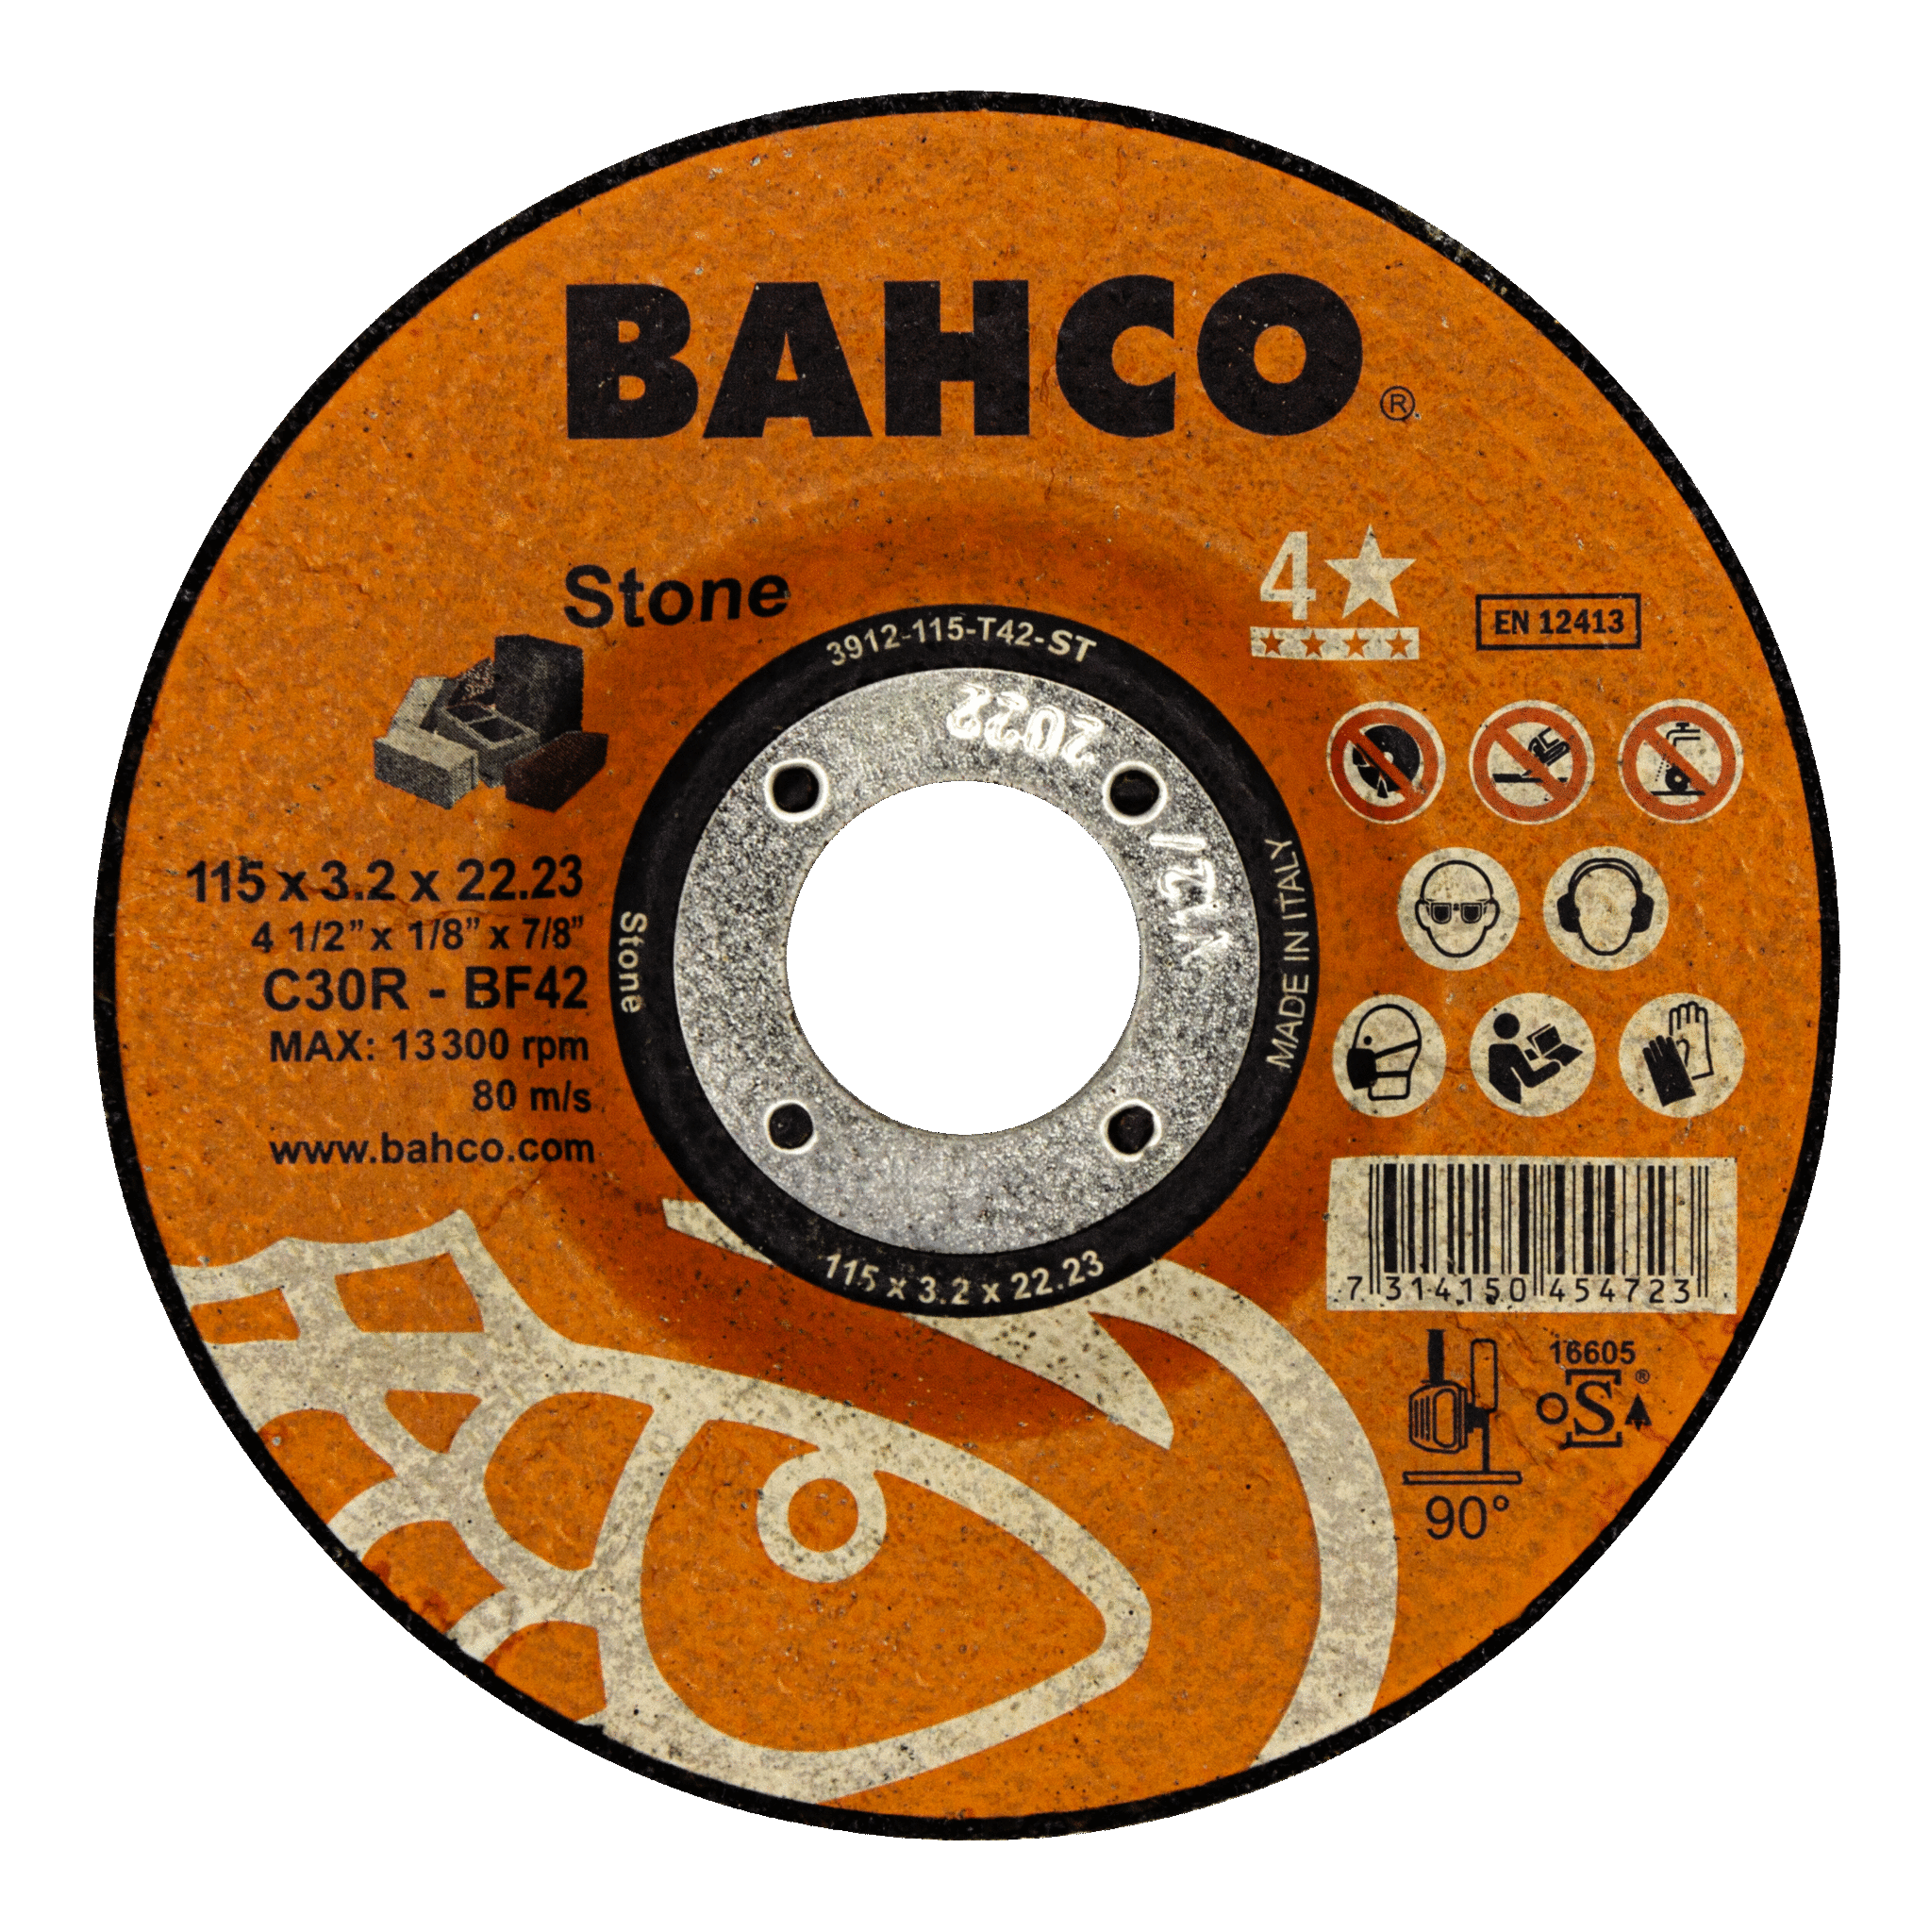 Высокопроизводительные дисковые пилы для строительства и работы с камнем 180 x 3.2 x 22.23mm BAHCO 3912-180-T42-ST